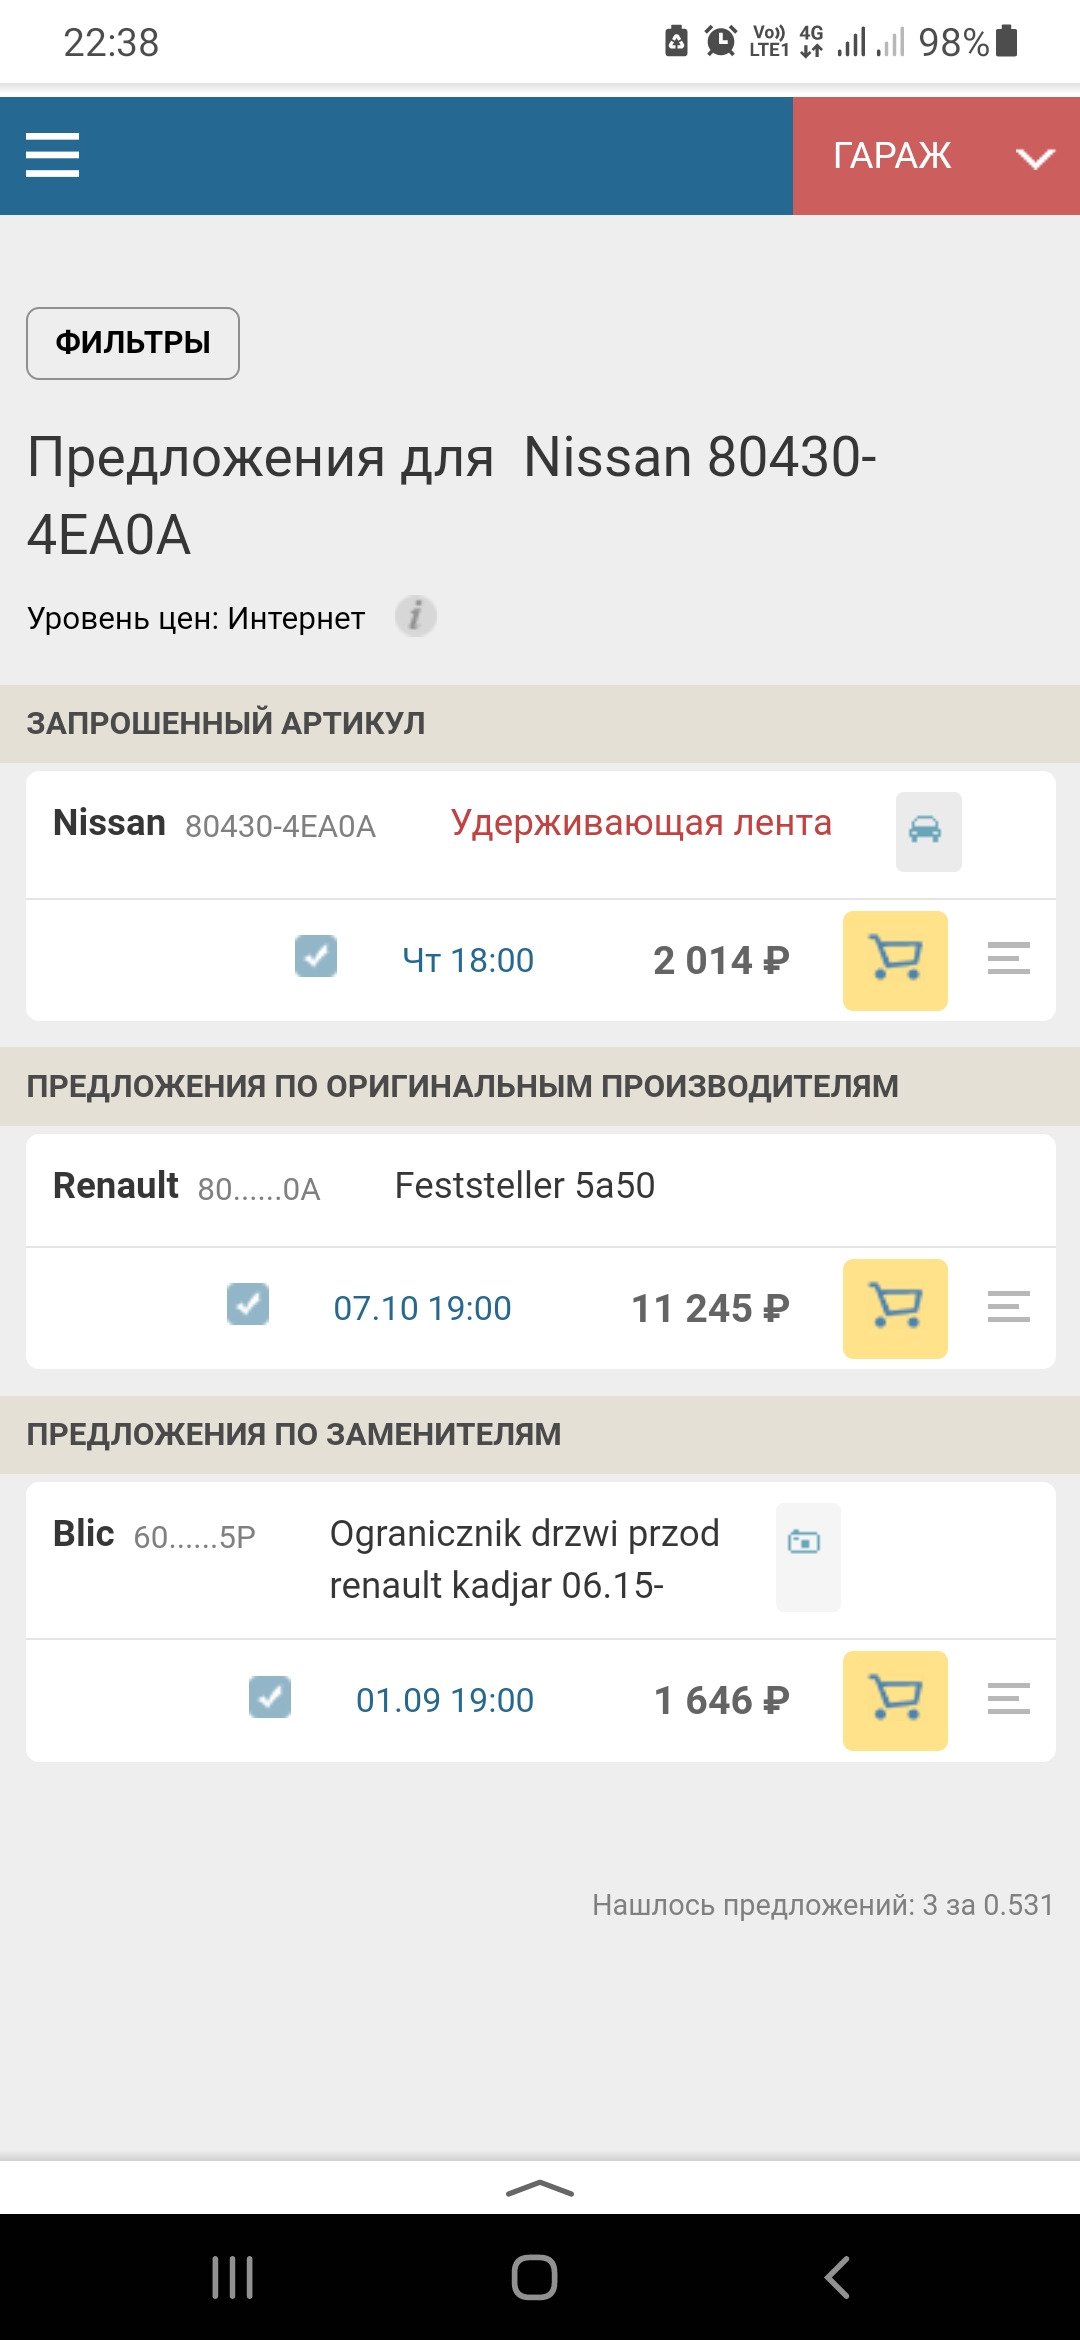 Screenshot_20210822-223827_Yandex.jpg